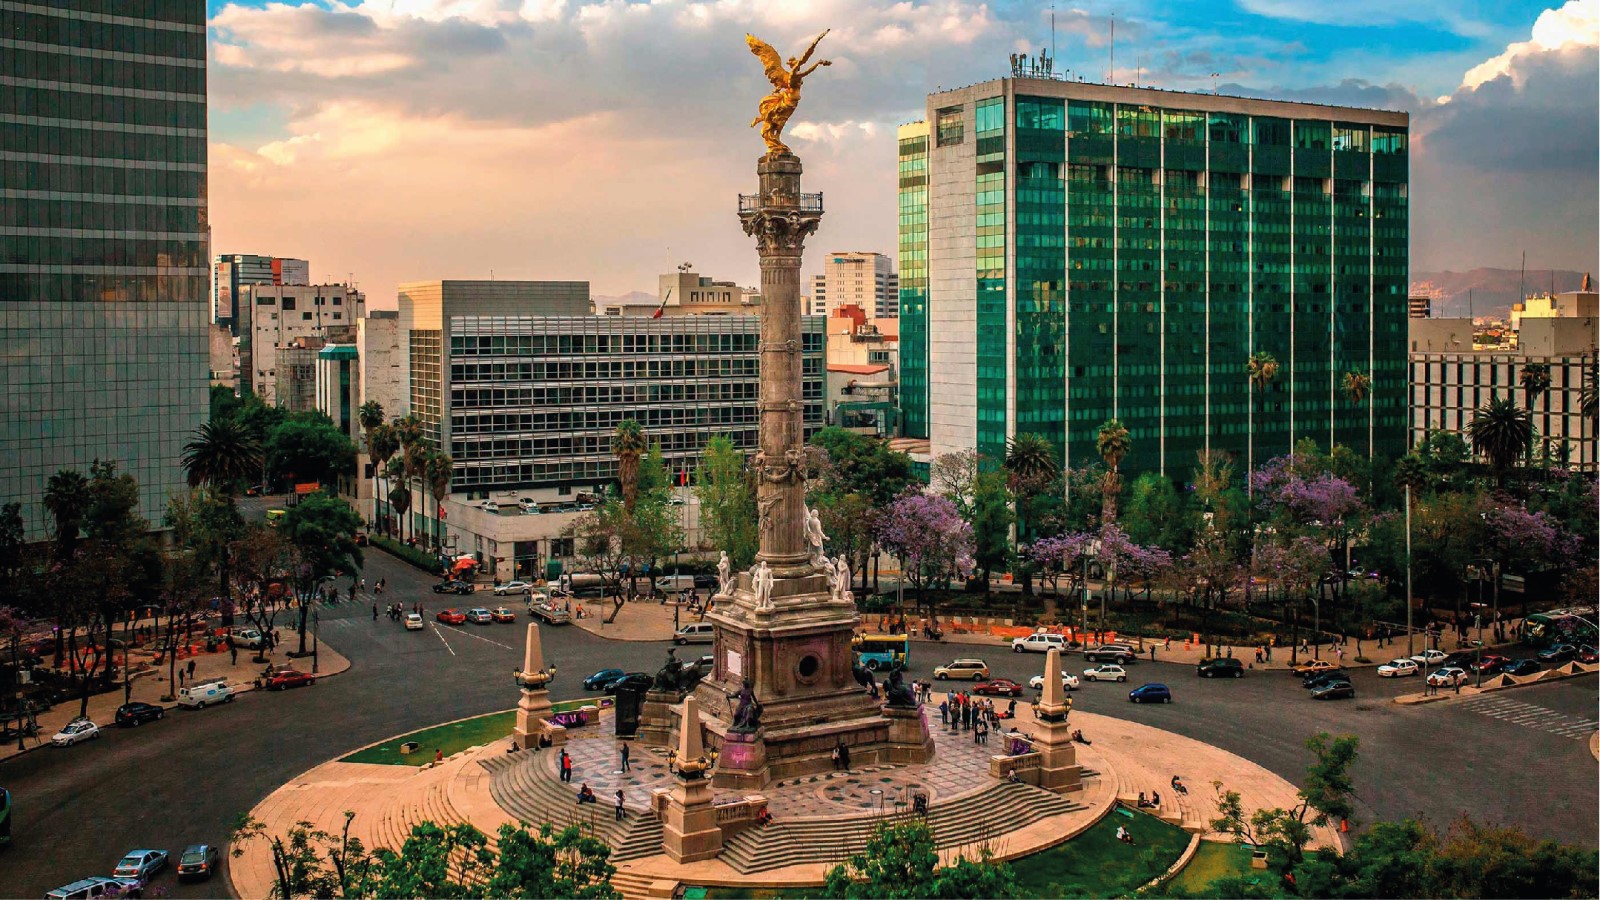 Si estas interesado en adquirir una propiedad en la Ciudad de México, es importante que consideres varios aspectos